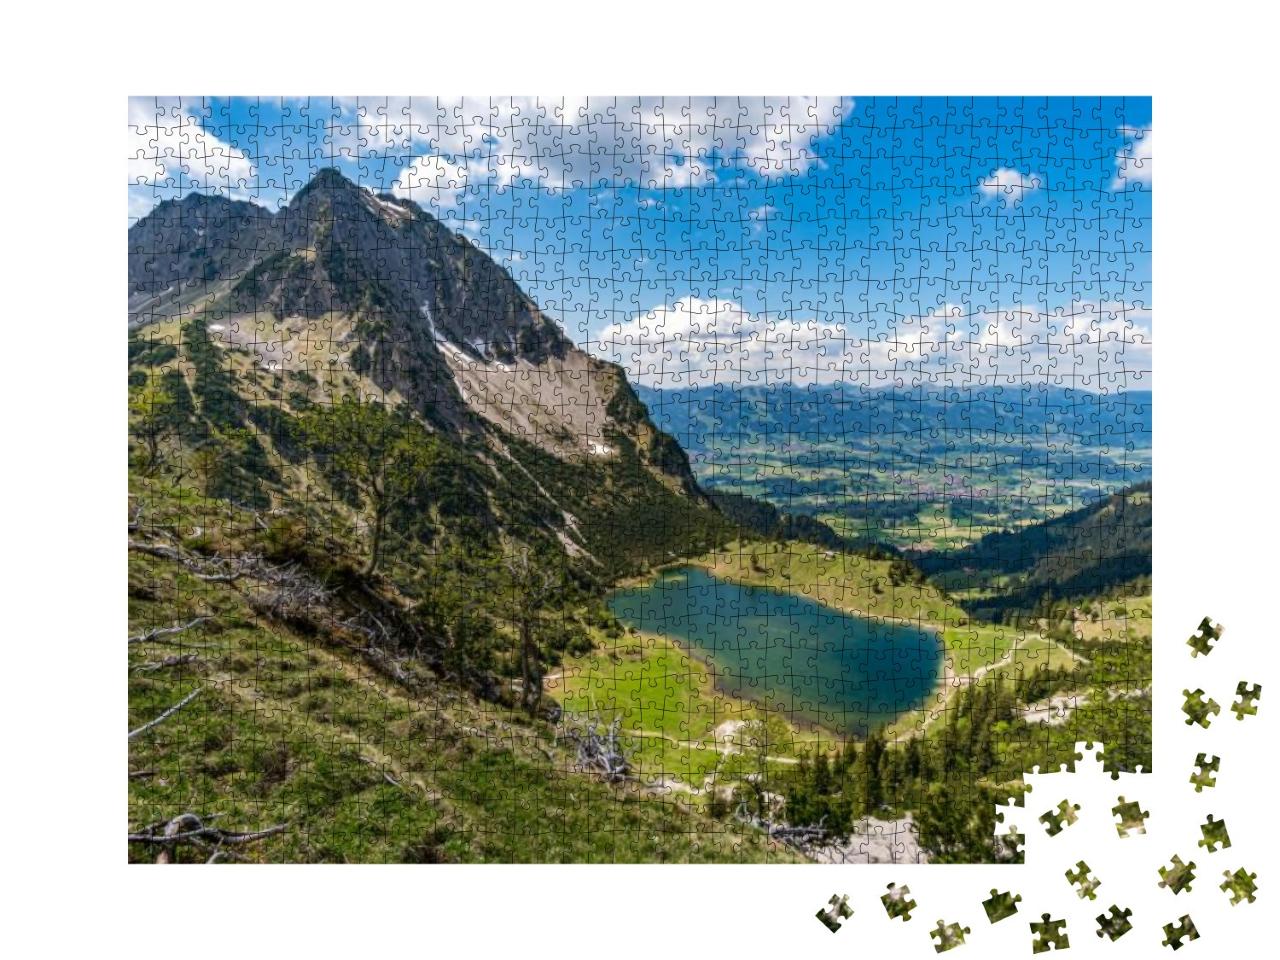 Puzzle 1000 Teile „Entschenkopfübergang mit fantastischem Panoramablick“